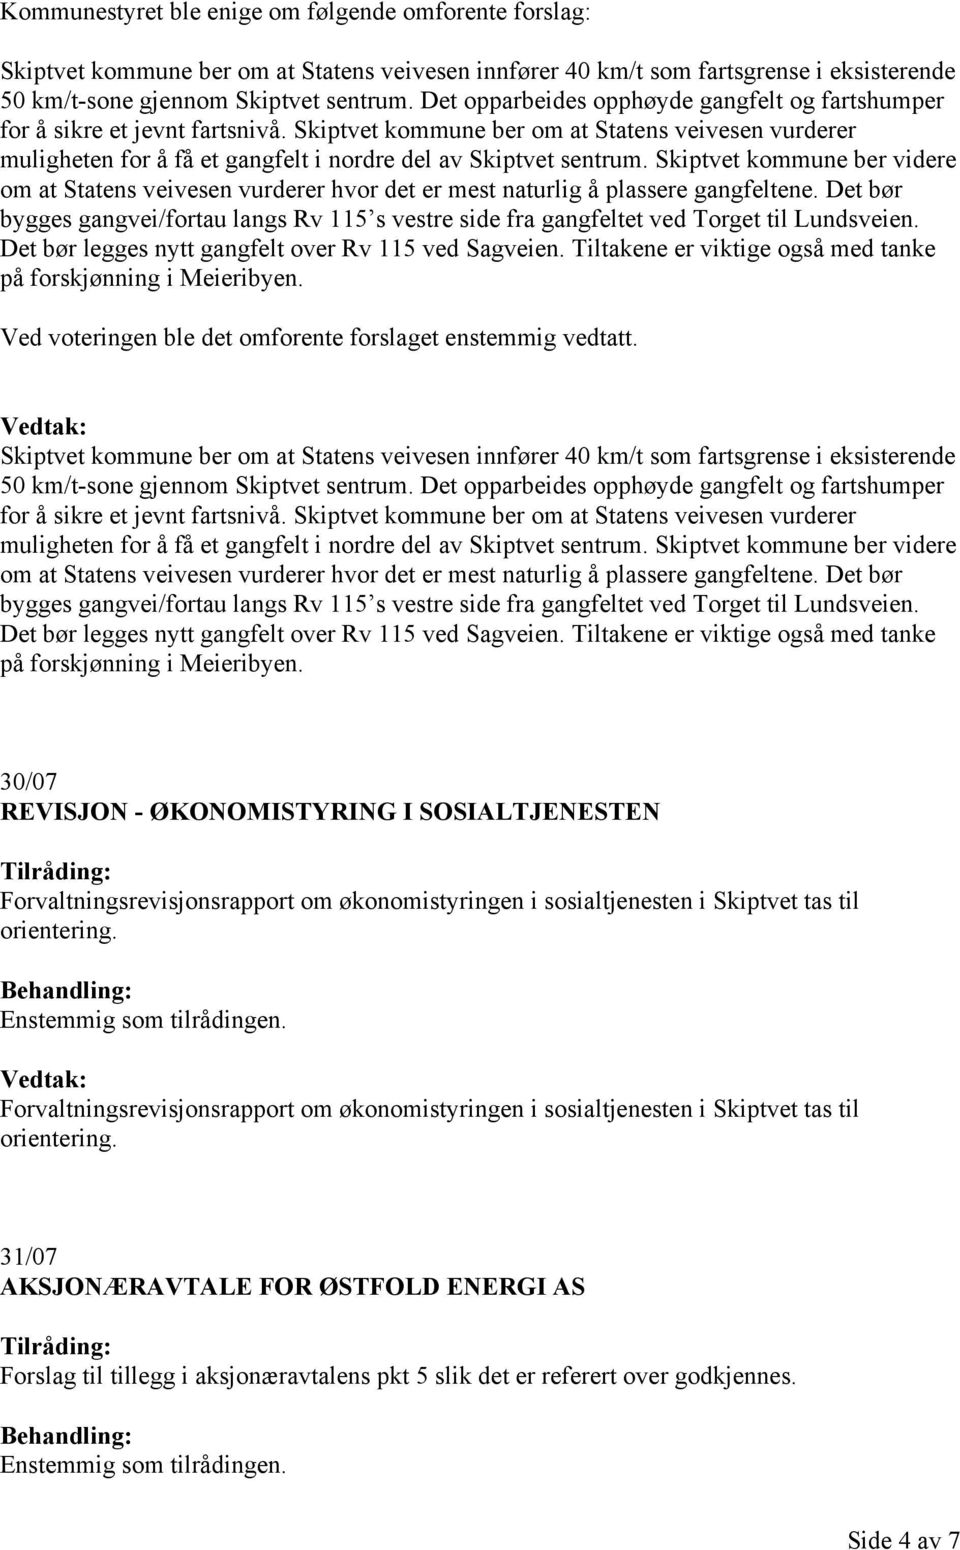 Skiptvet kommune ber videre om at Statens veivesen vurderer hvor det er mest naturlig å plassere gangfeltene.